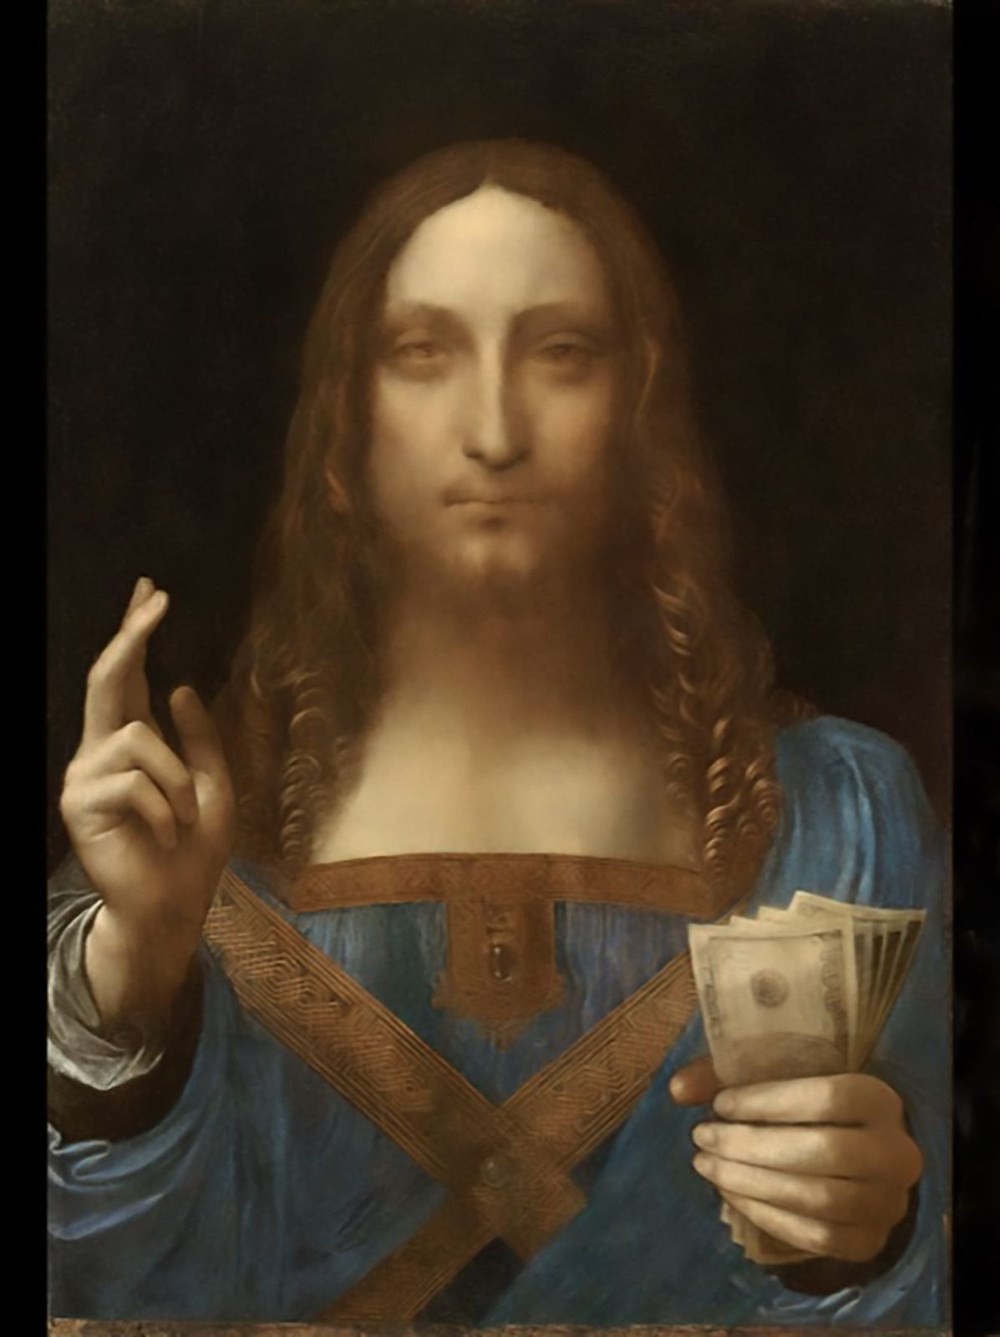 Dünyanın en pahalı tablosu olan Leonardo da Vinci’nin
Salvator Mundi’si NFT olarak satışta - 2